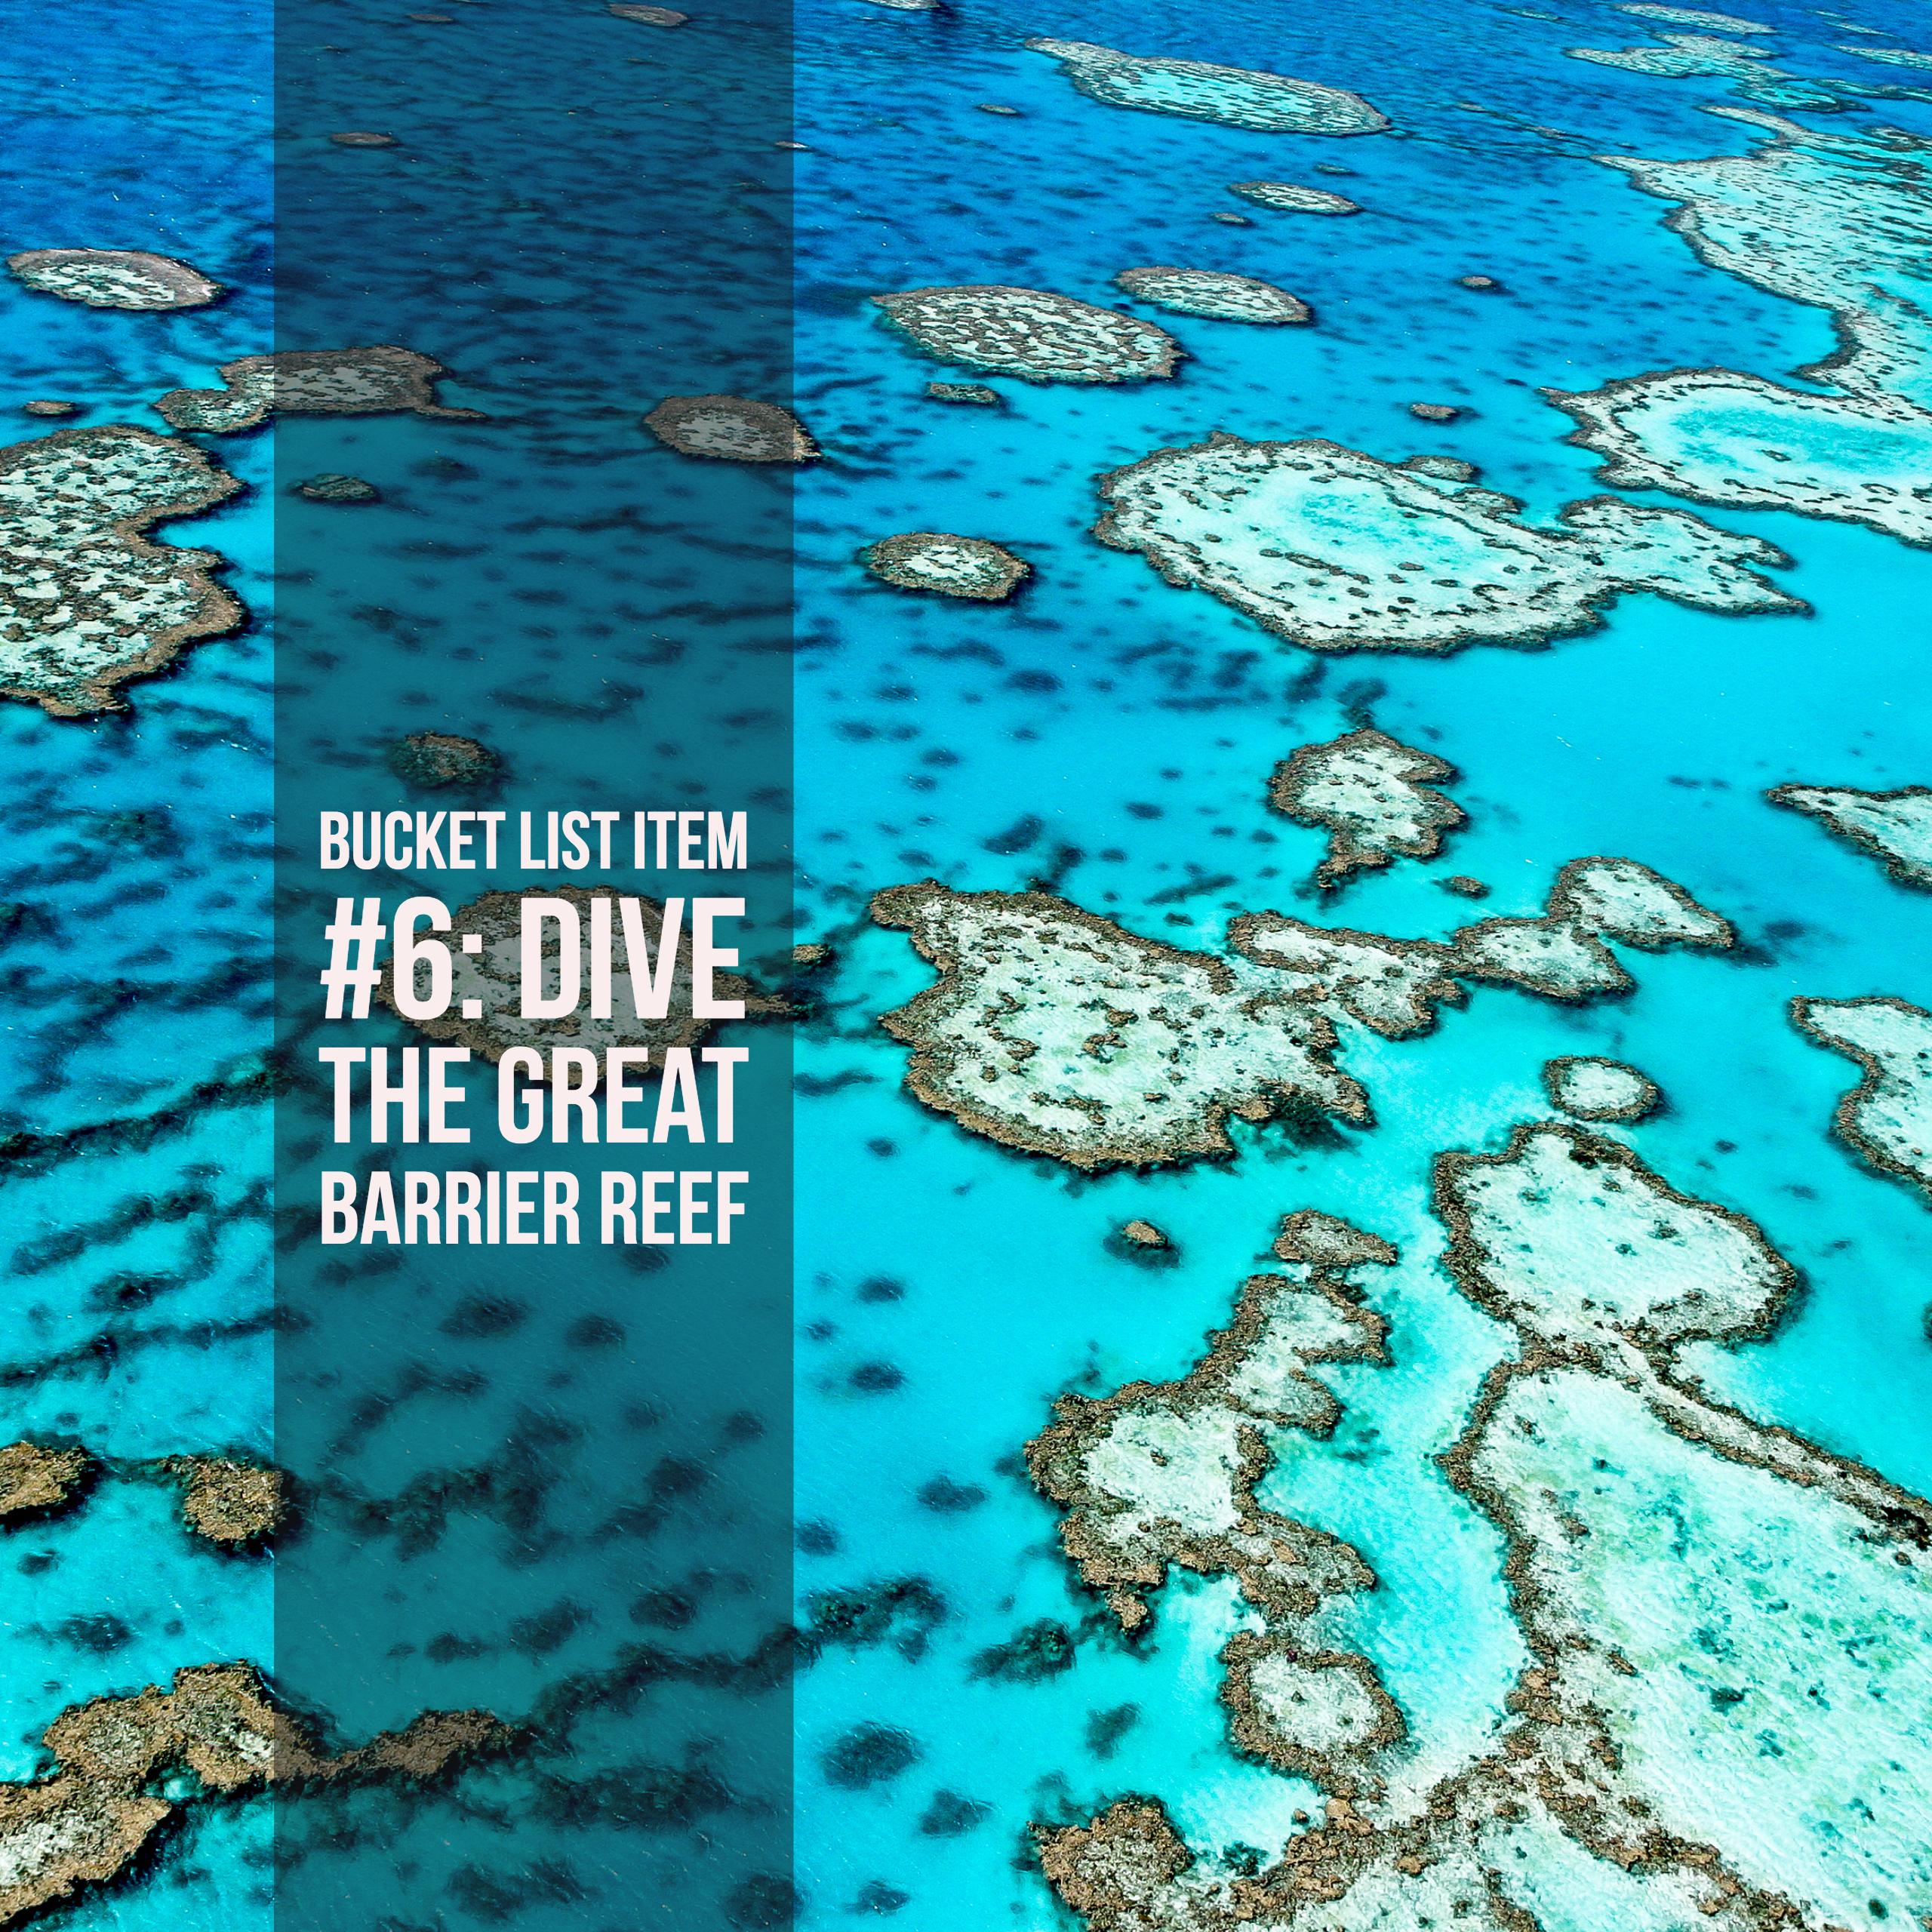 Bucket List Ideas: Great Barrier Reef, Australia